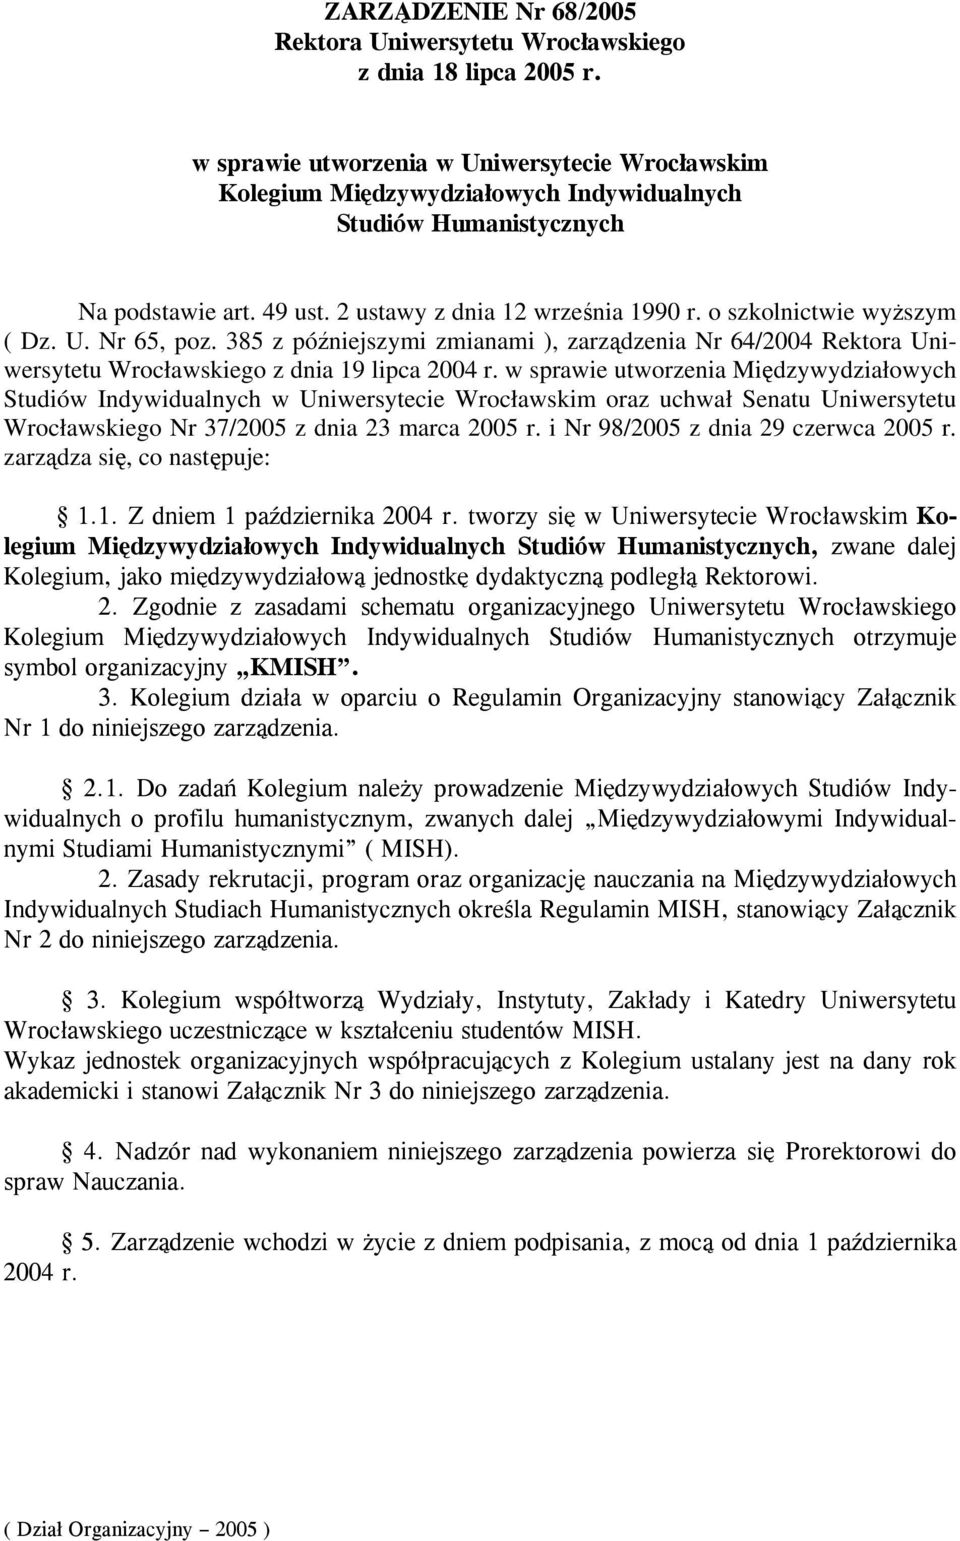 w sprawie utworzenia Międzywydziałowych Studiów Indywidualnych w Uniwersytecie Wrocławskim oraz uchwał Senatu Uniwersytetu Wrocławskiego Nr 37/2005 z dnia 23 marca 2005 r.